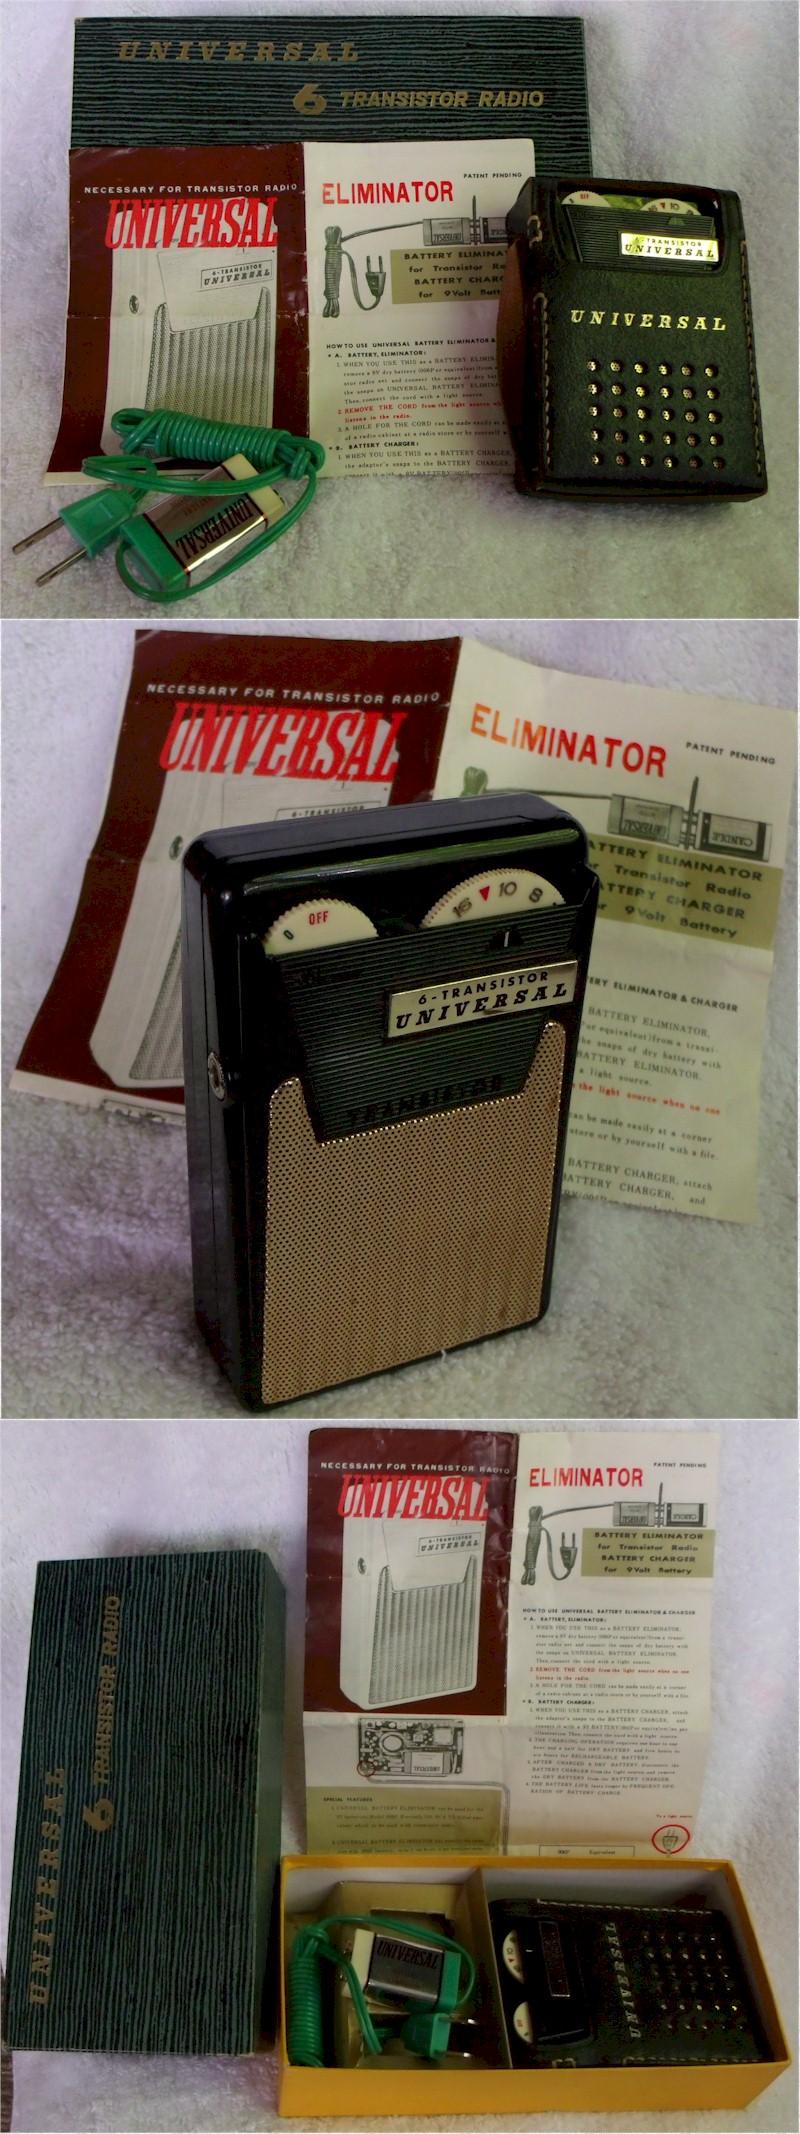 Universal PTR-62B Pocket Transistor (1962)